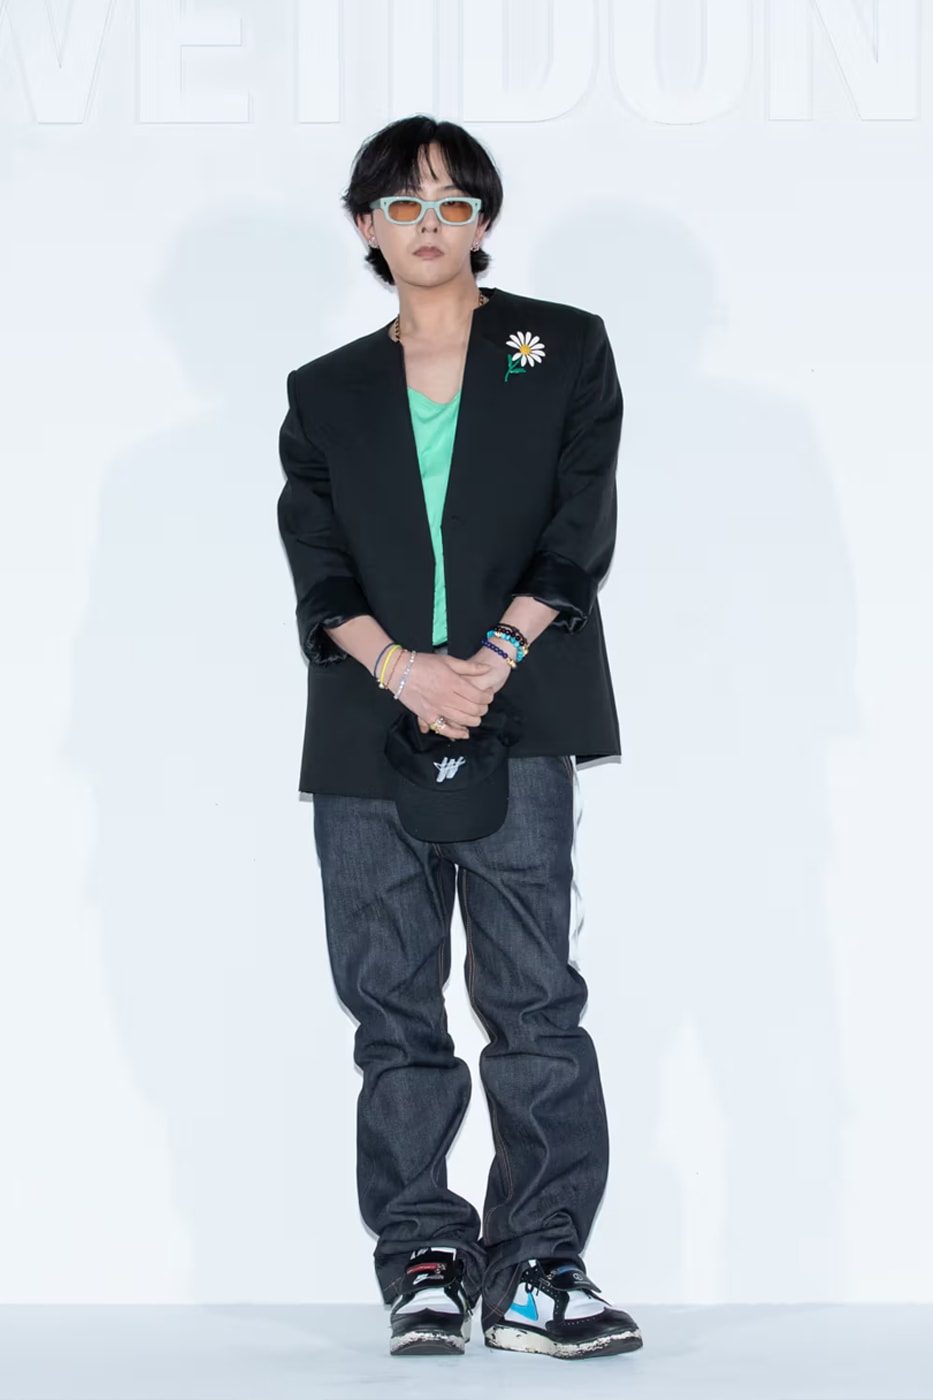 ジードラゴンがピースマイナスワン x ナイキ クウォンド 1の未発売モデルを着用 G-Dragon New PEACEMINUSONE Nike Kwondo 1 Colorway Info Big Bang